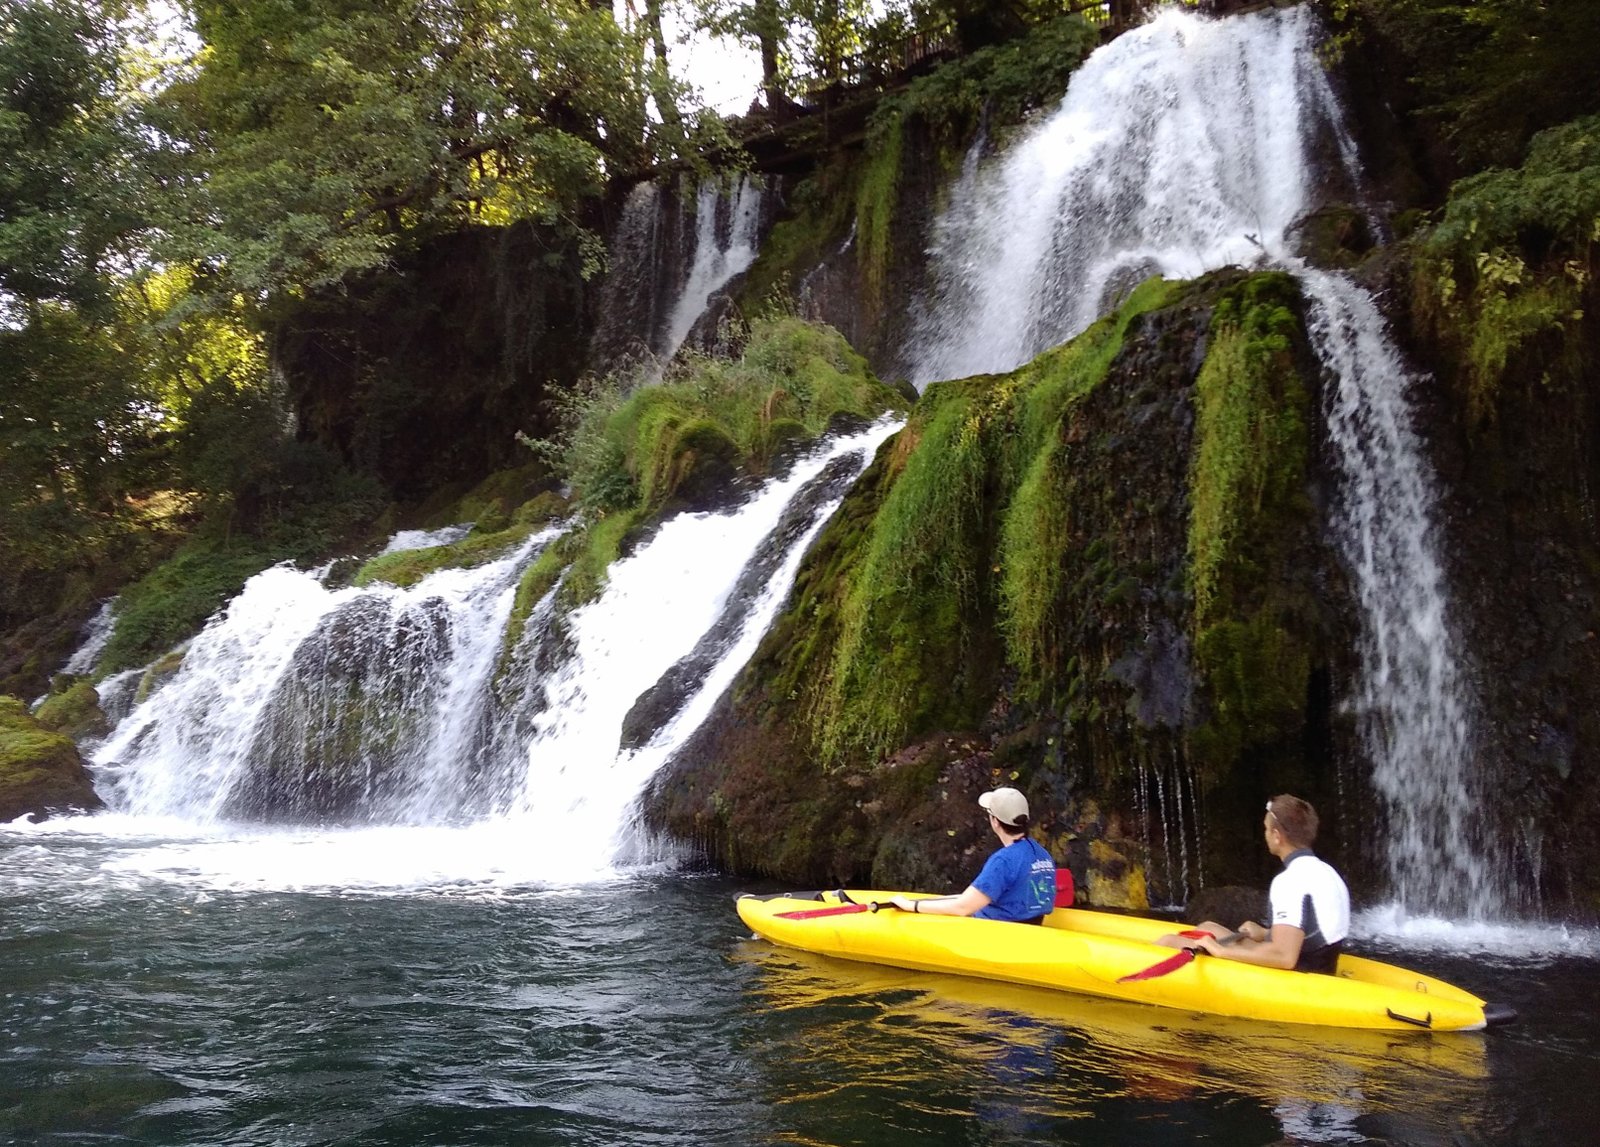 Kayaking on the Drina